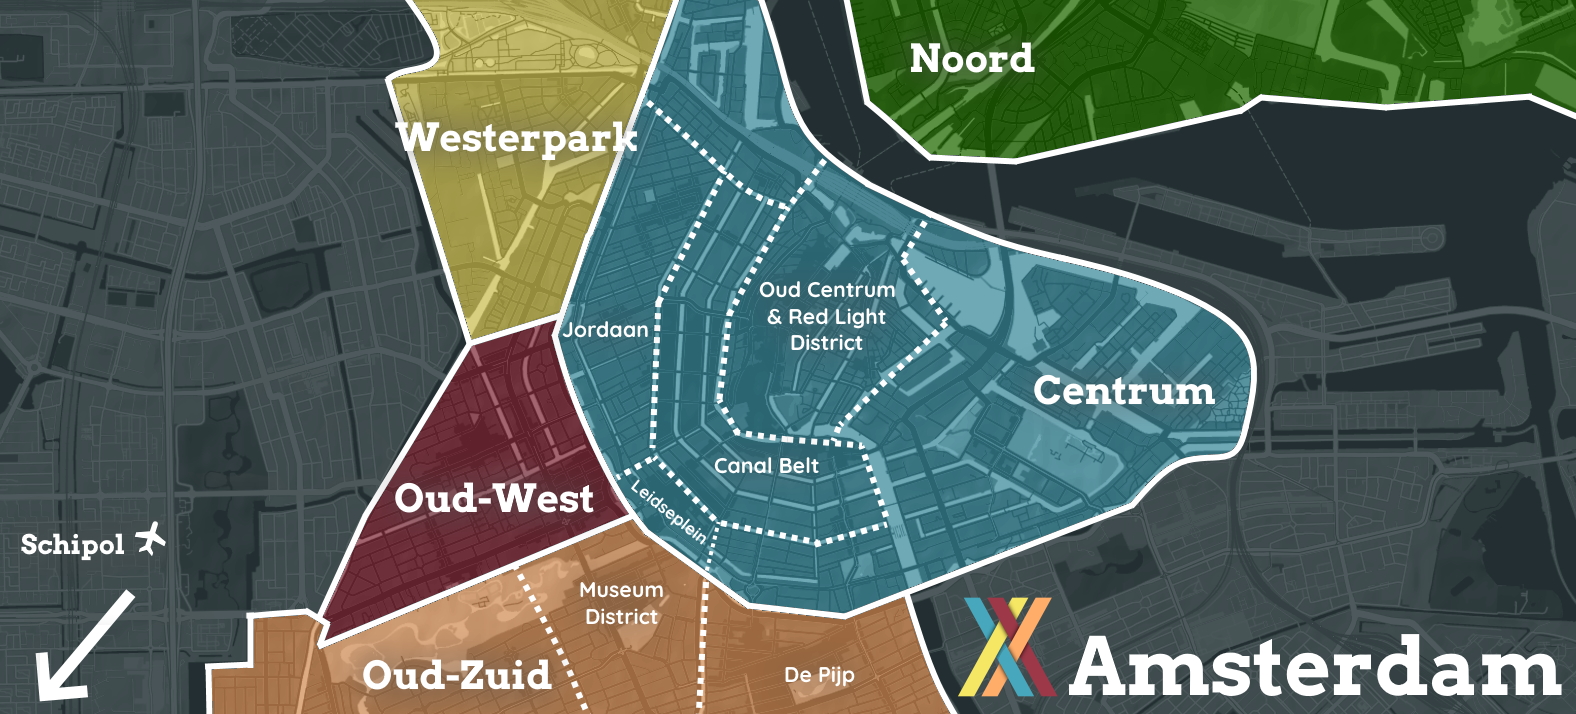 Amsterdam Accommodation Map 